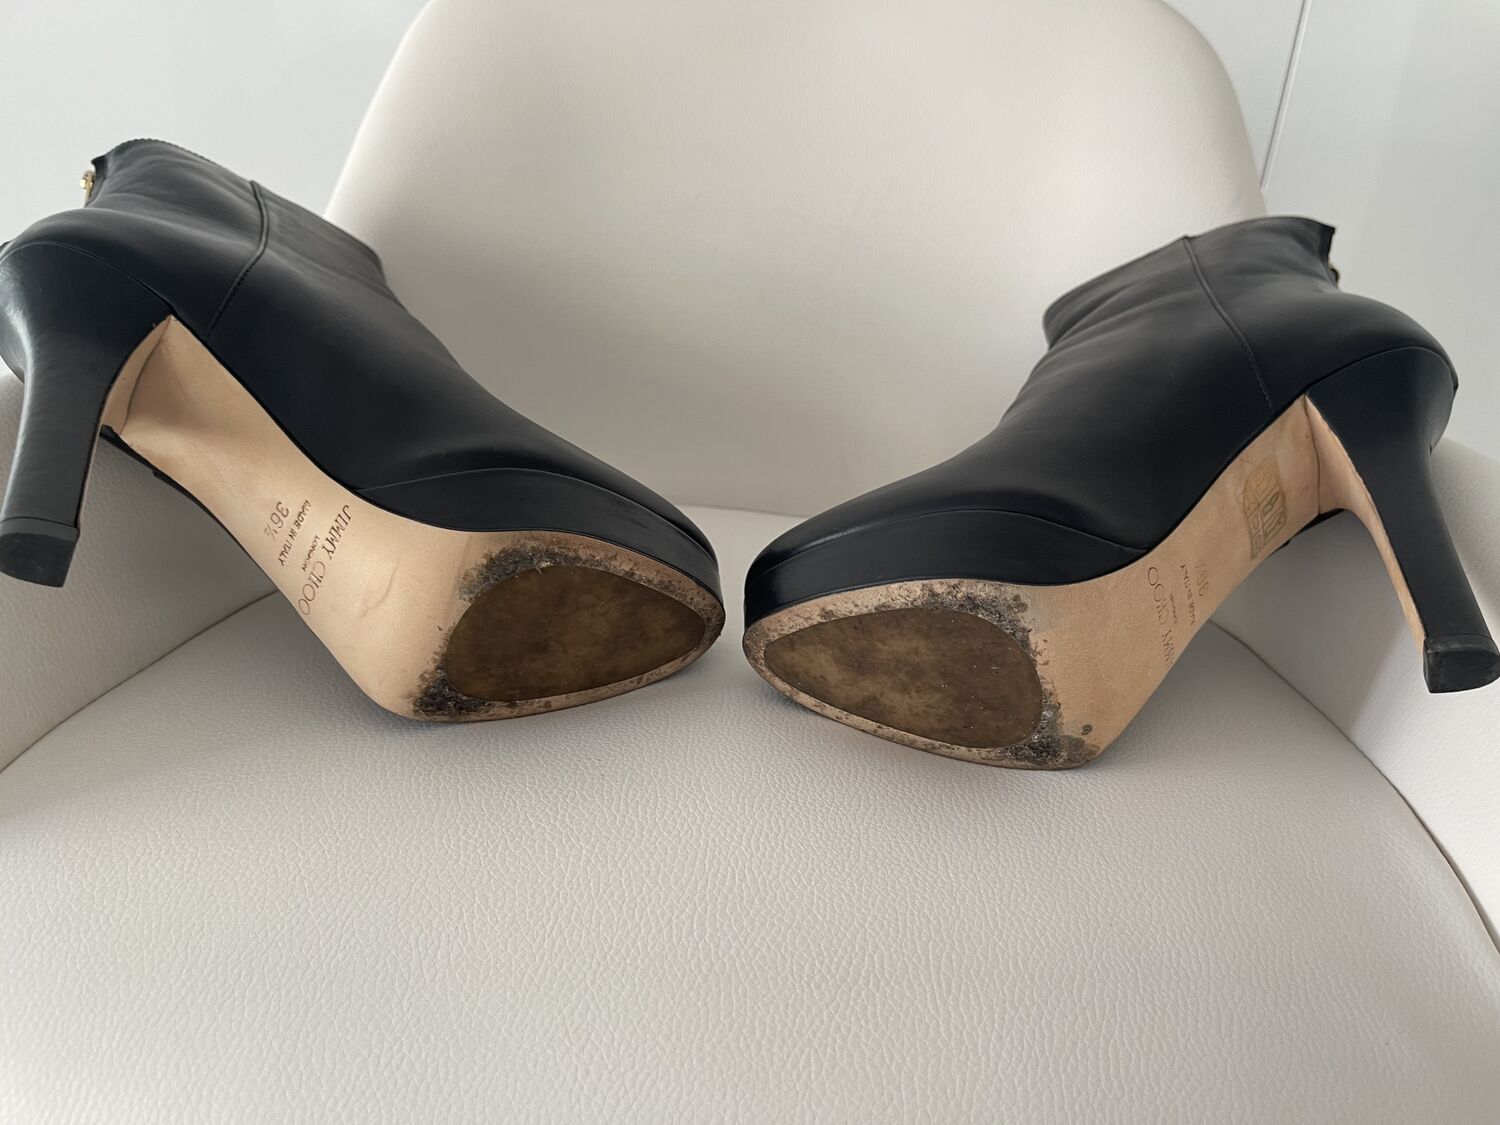 Louis Vuitton - Boots - Size: Shoes / EU 36.5 - Catawiki